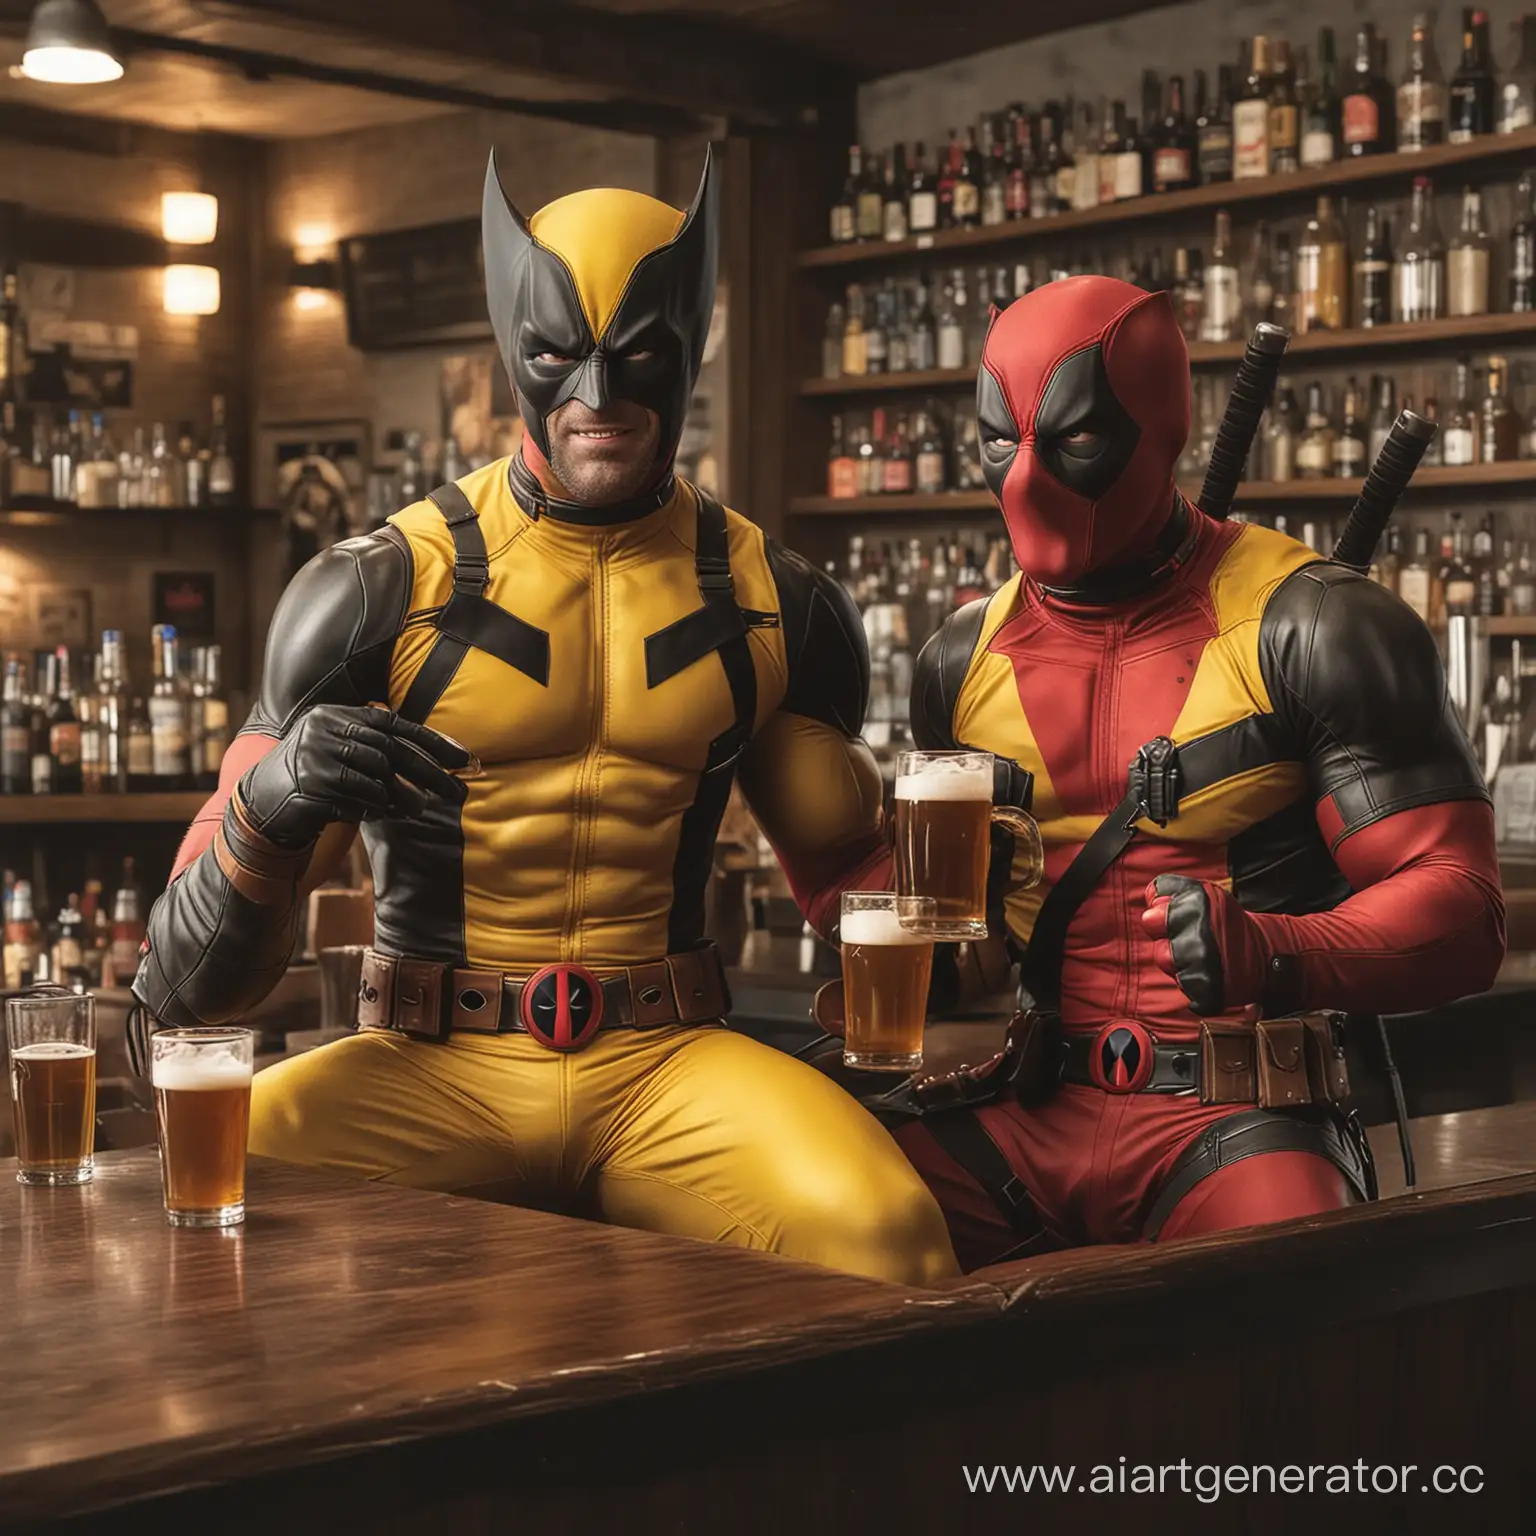 росомаха в желтом костюме и дэдпул пьют пиво в баре
